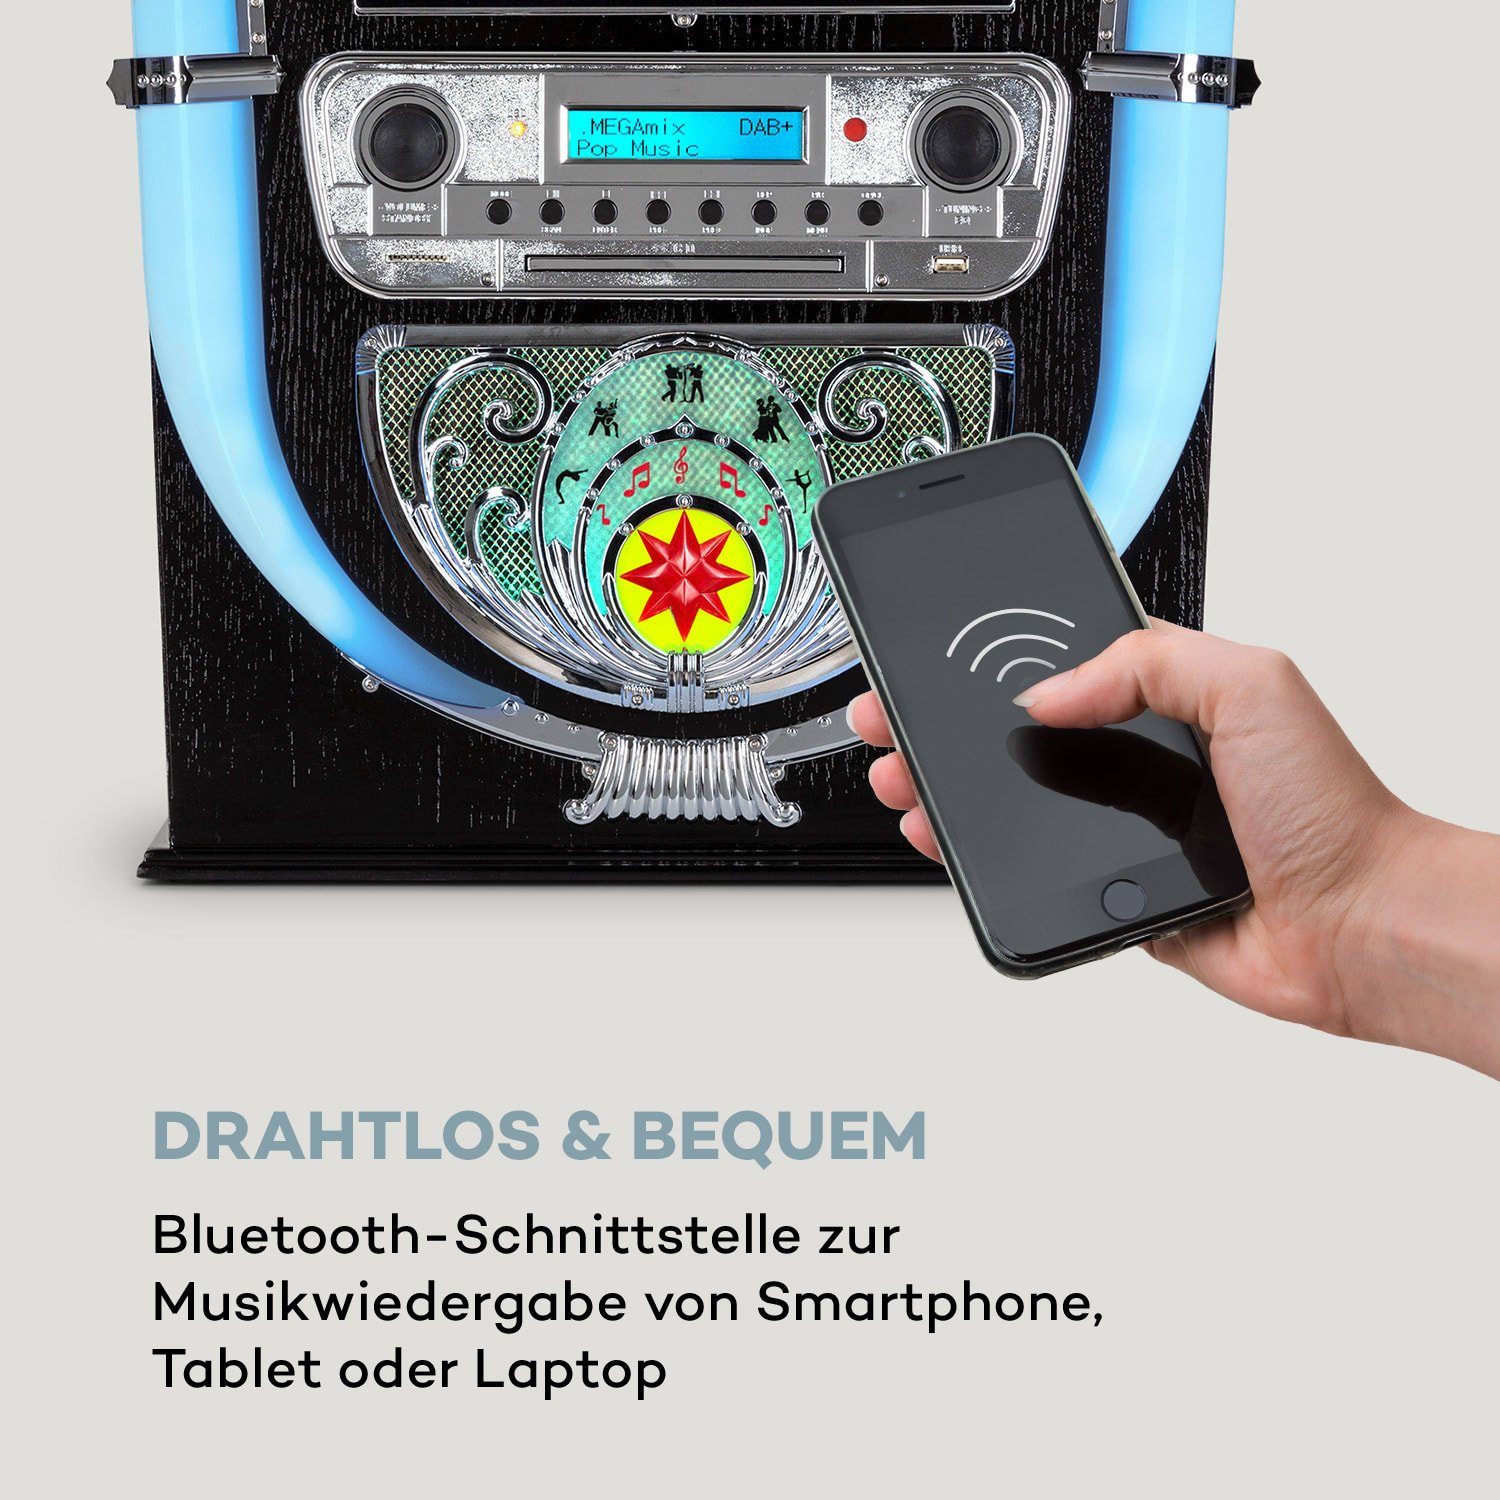 SD Auna Aufnahmefunktion) Retro Mini Stereoanlage USB Bluetooth (DAB+/FM-Radiotuner, Graceland Uhrzeitanzeige